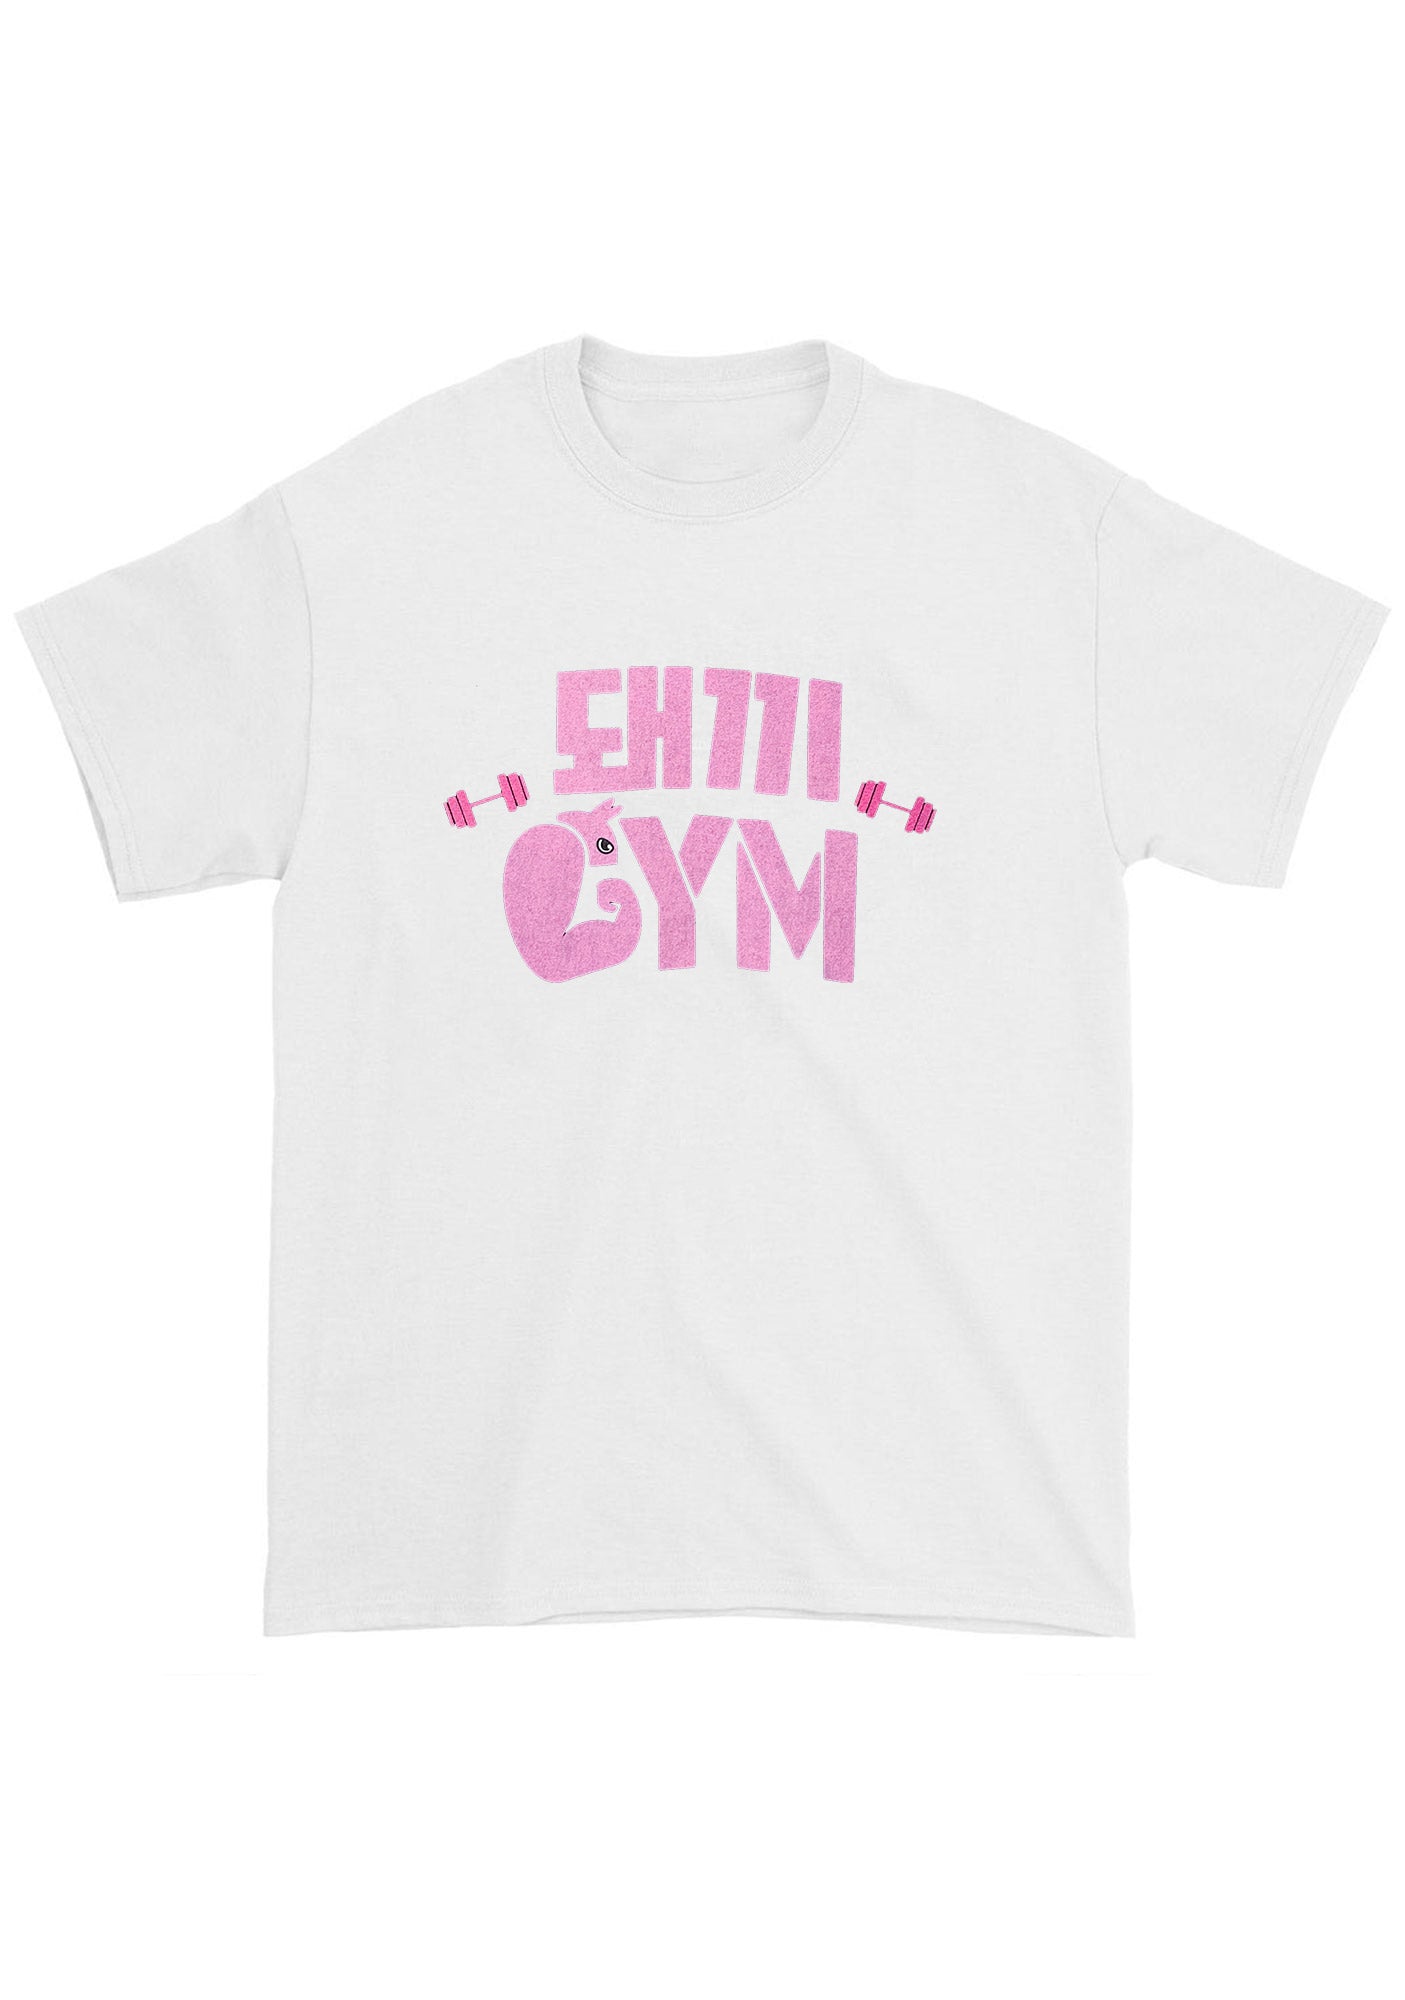 Binnie's Gym Skz Kpop Chunky Shirt